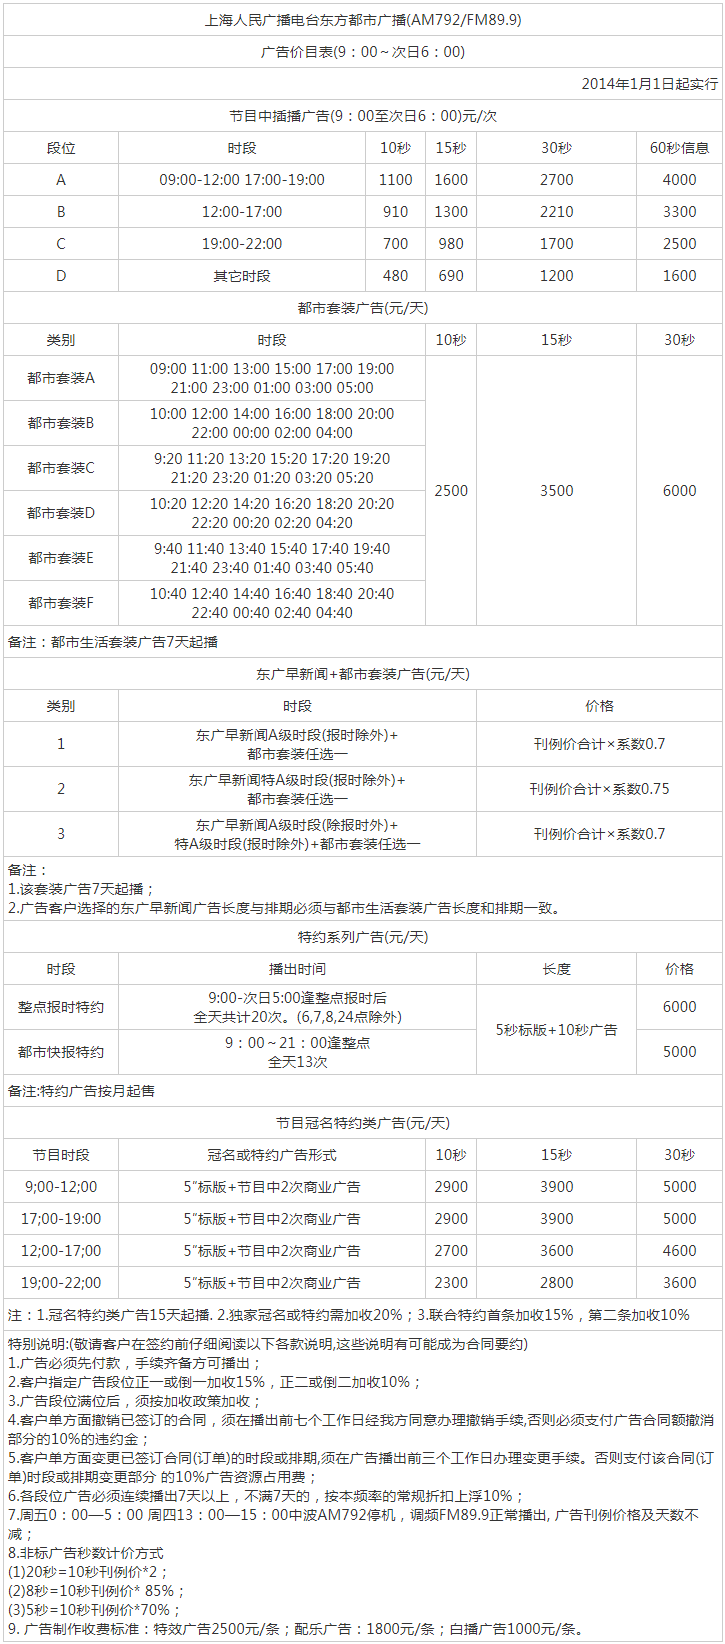 2014上海东方广播电台东方都市广播FM89.9驾车调频广告报价表.png